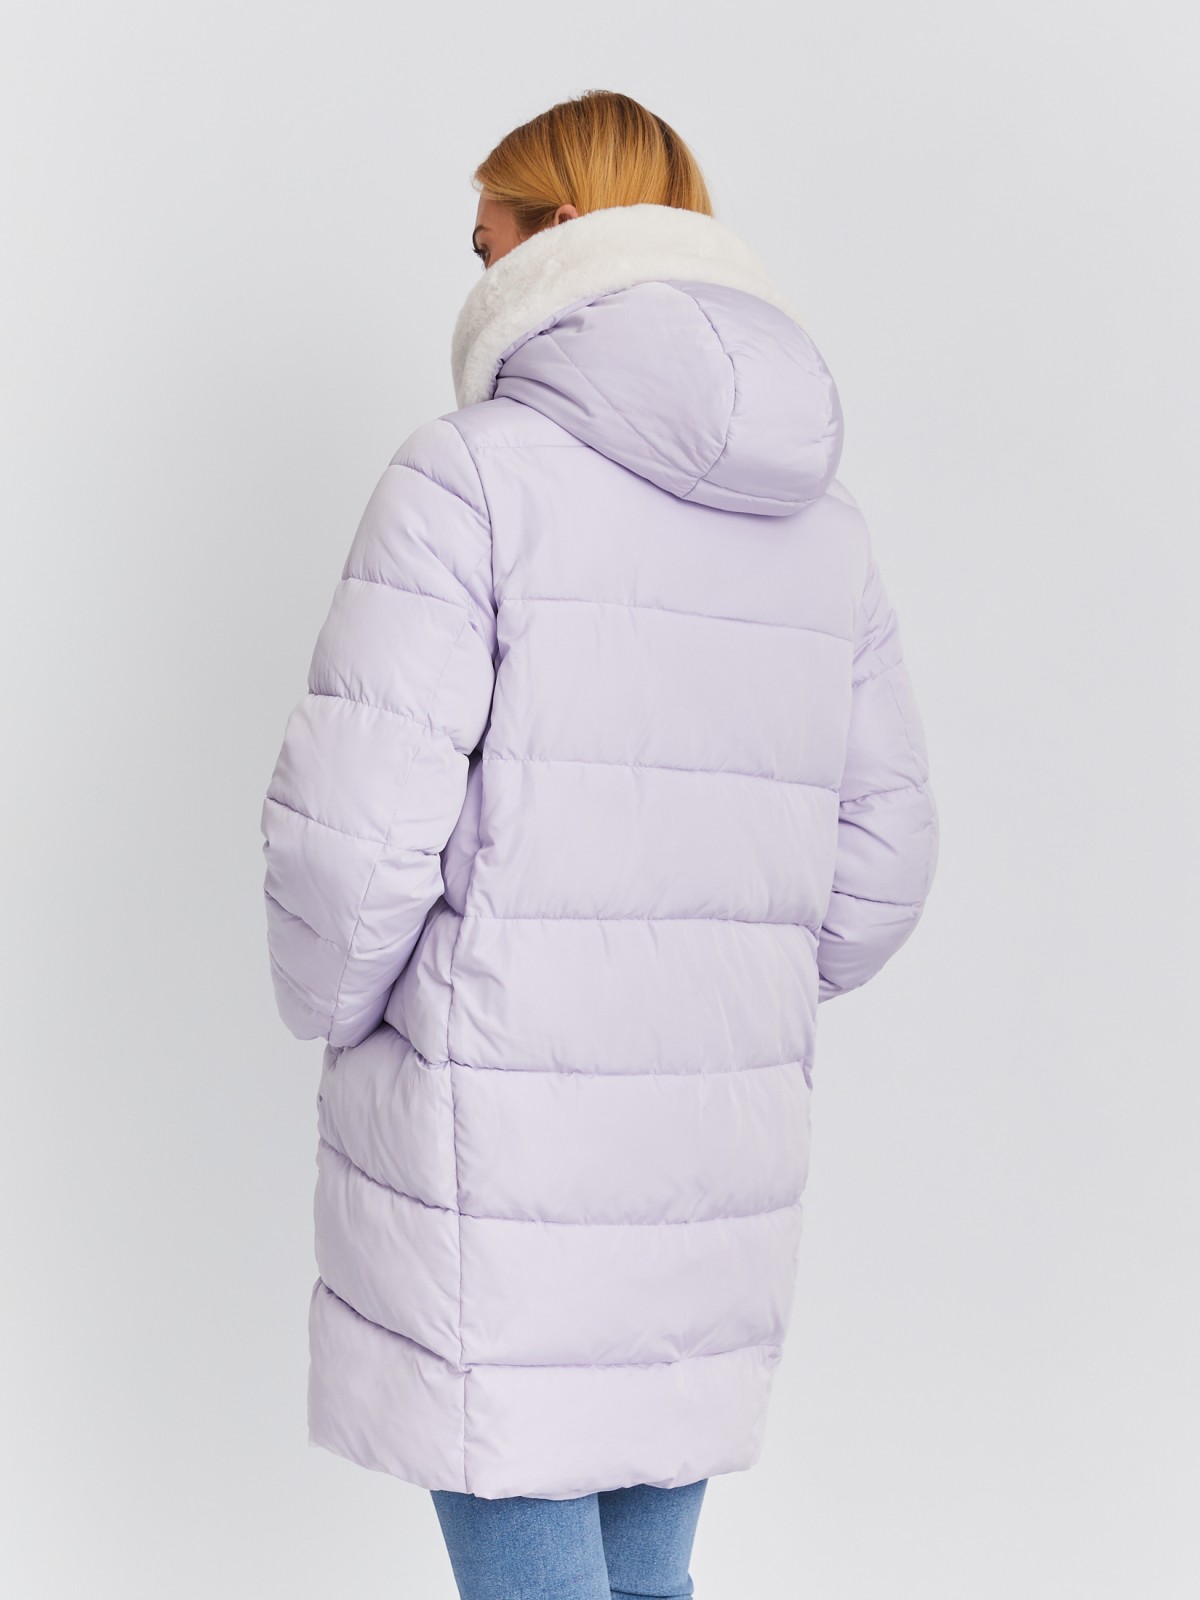 Тёплая стёганая куртка-пальто с капюшоном и отделкой из экомеха